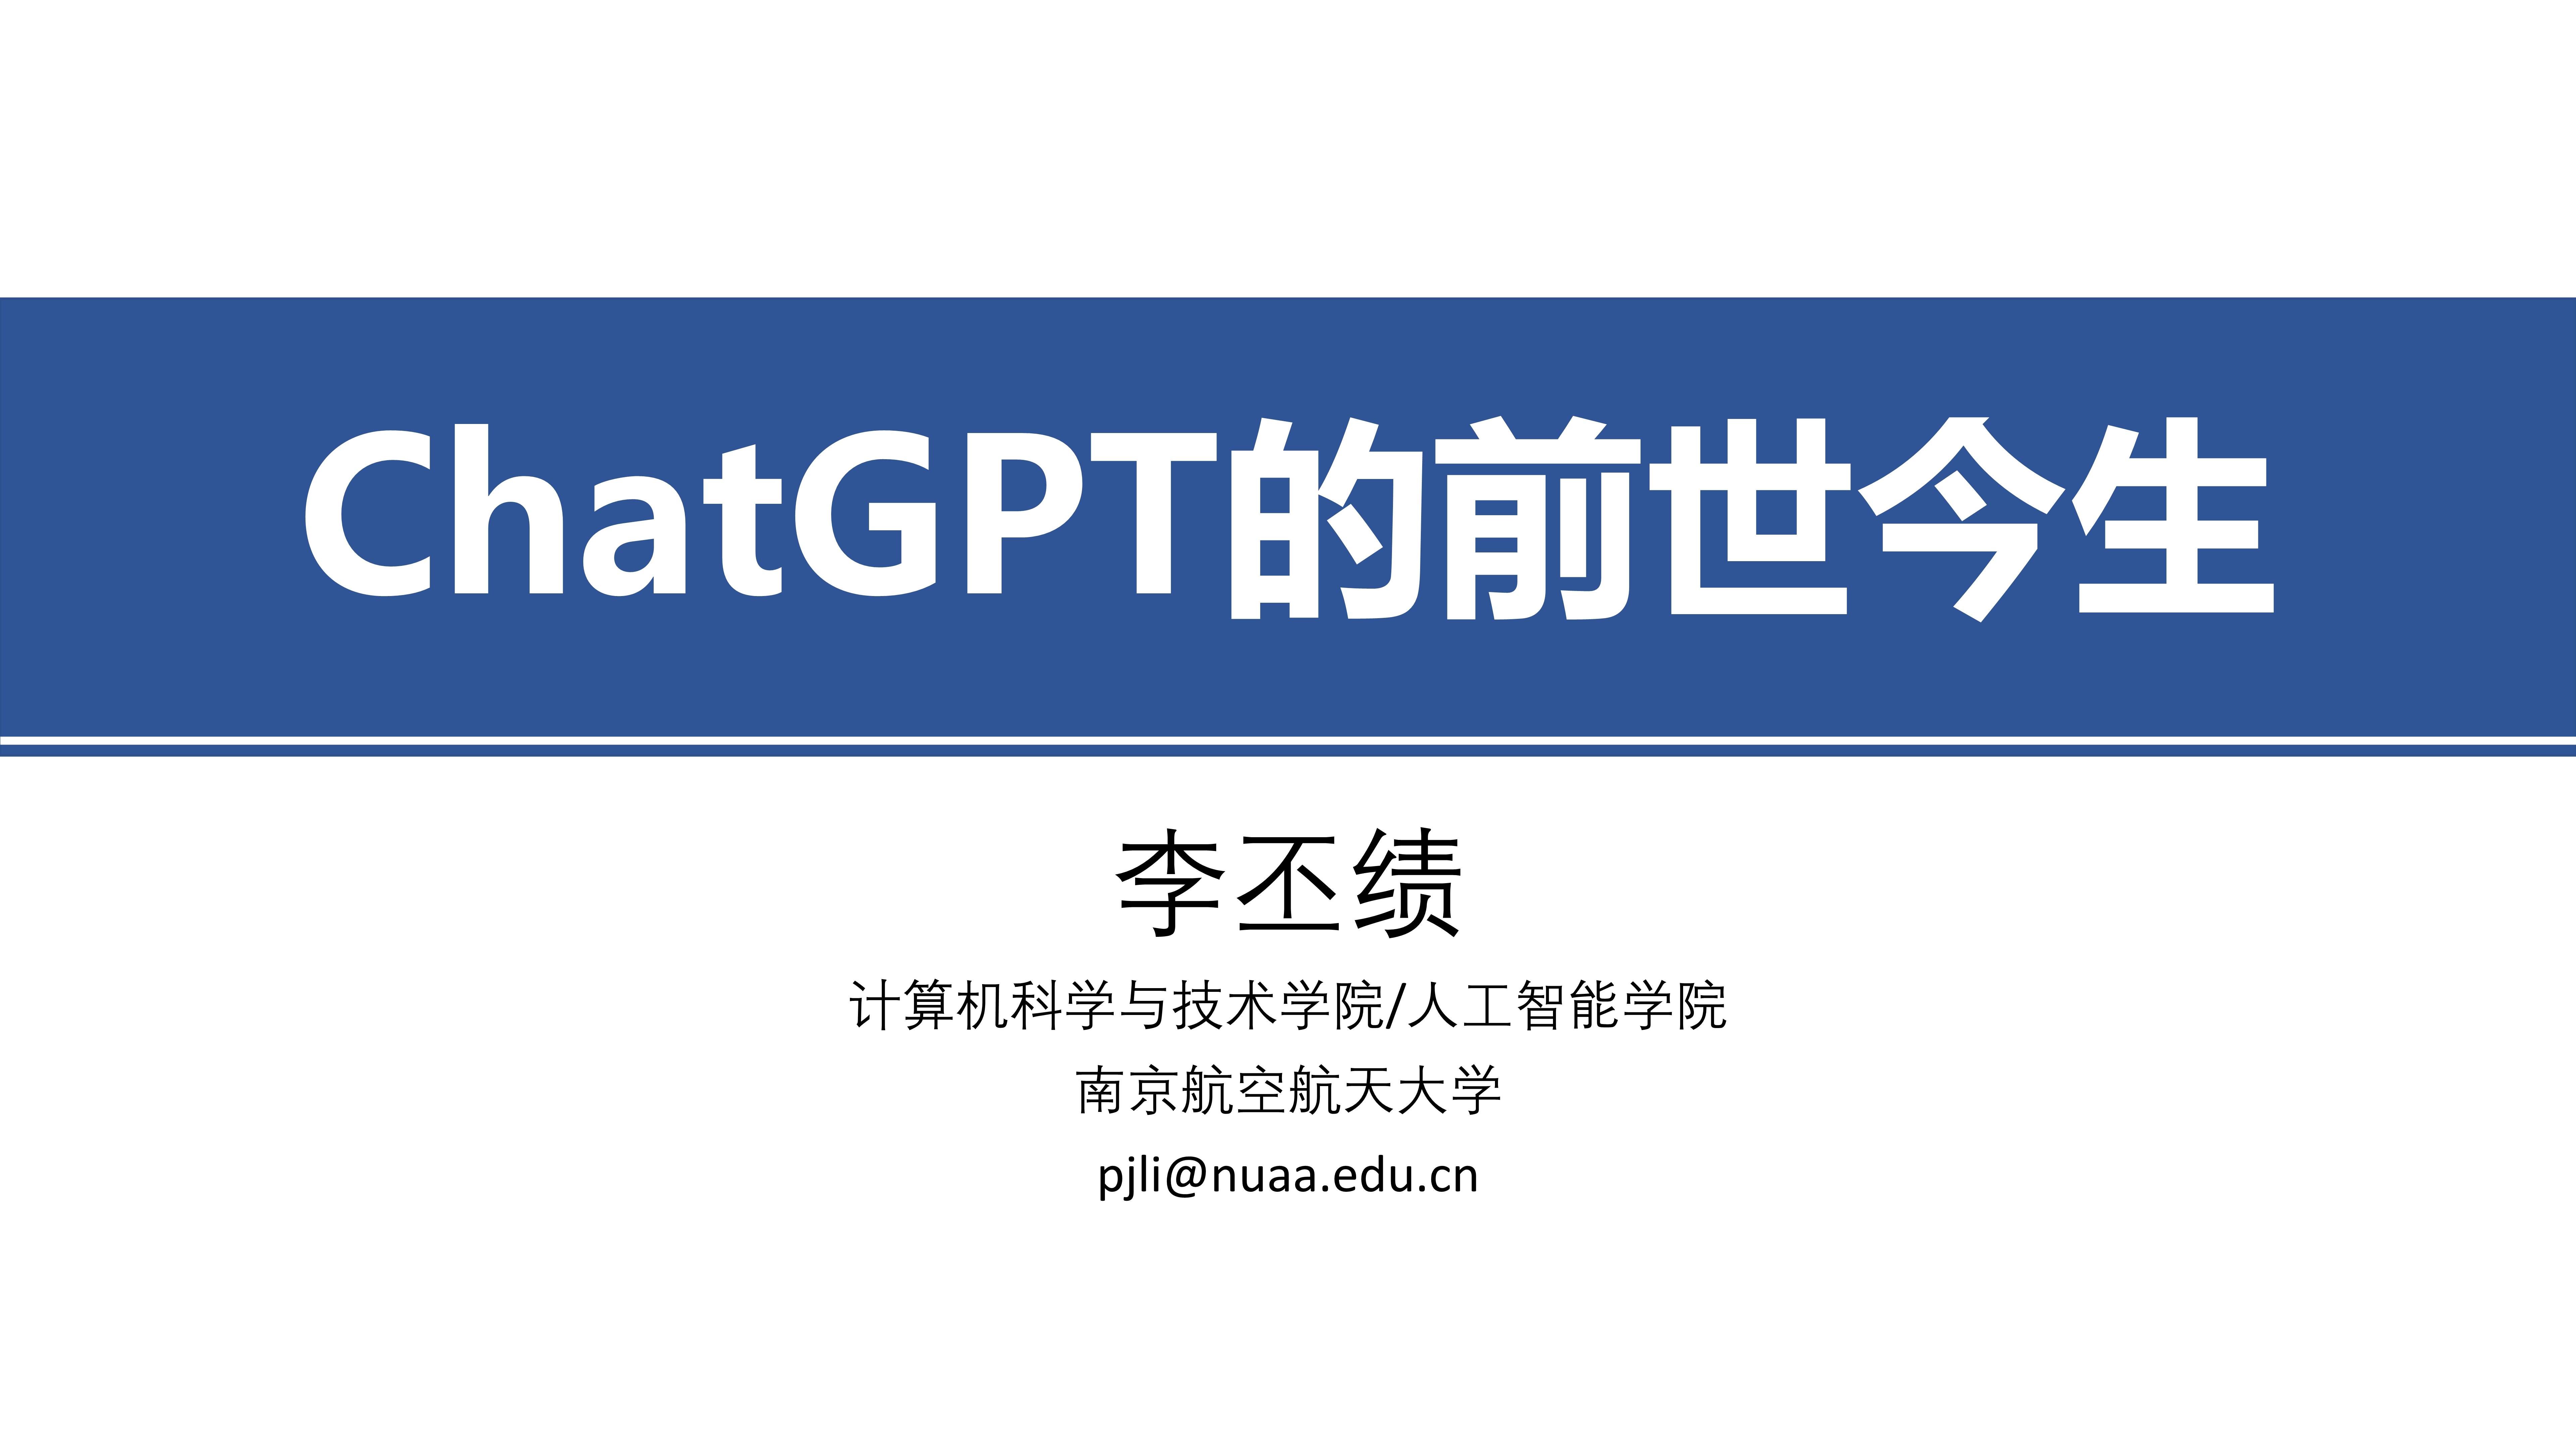 2016小苹果韩国版
:464页幻灯片《ChatGPT+的前世今生》目前最全的课件-第1张图片-太平洋在线下载